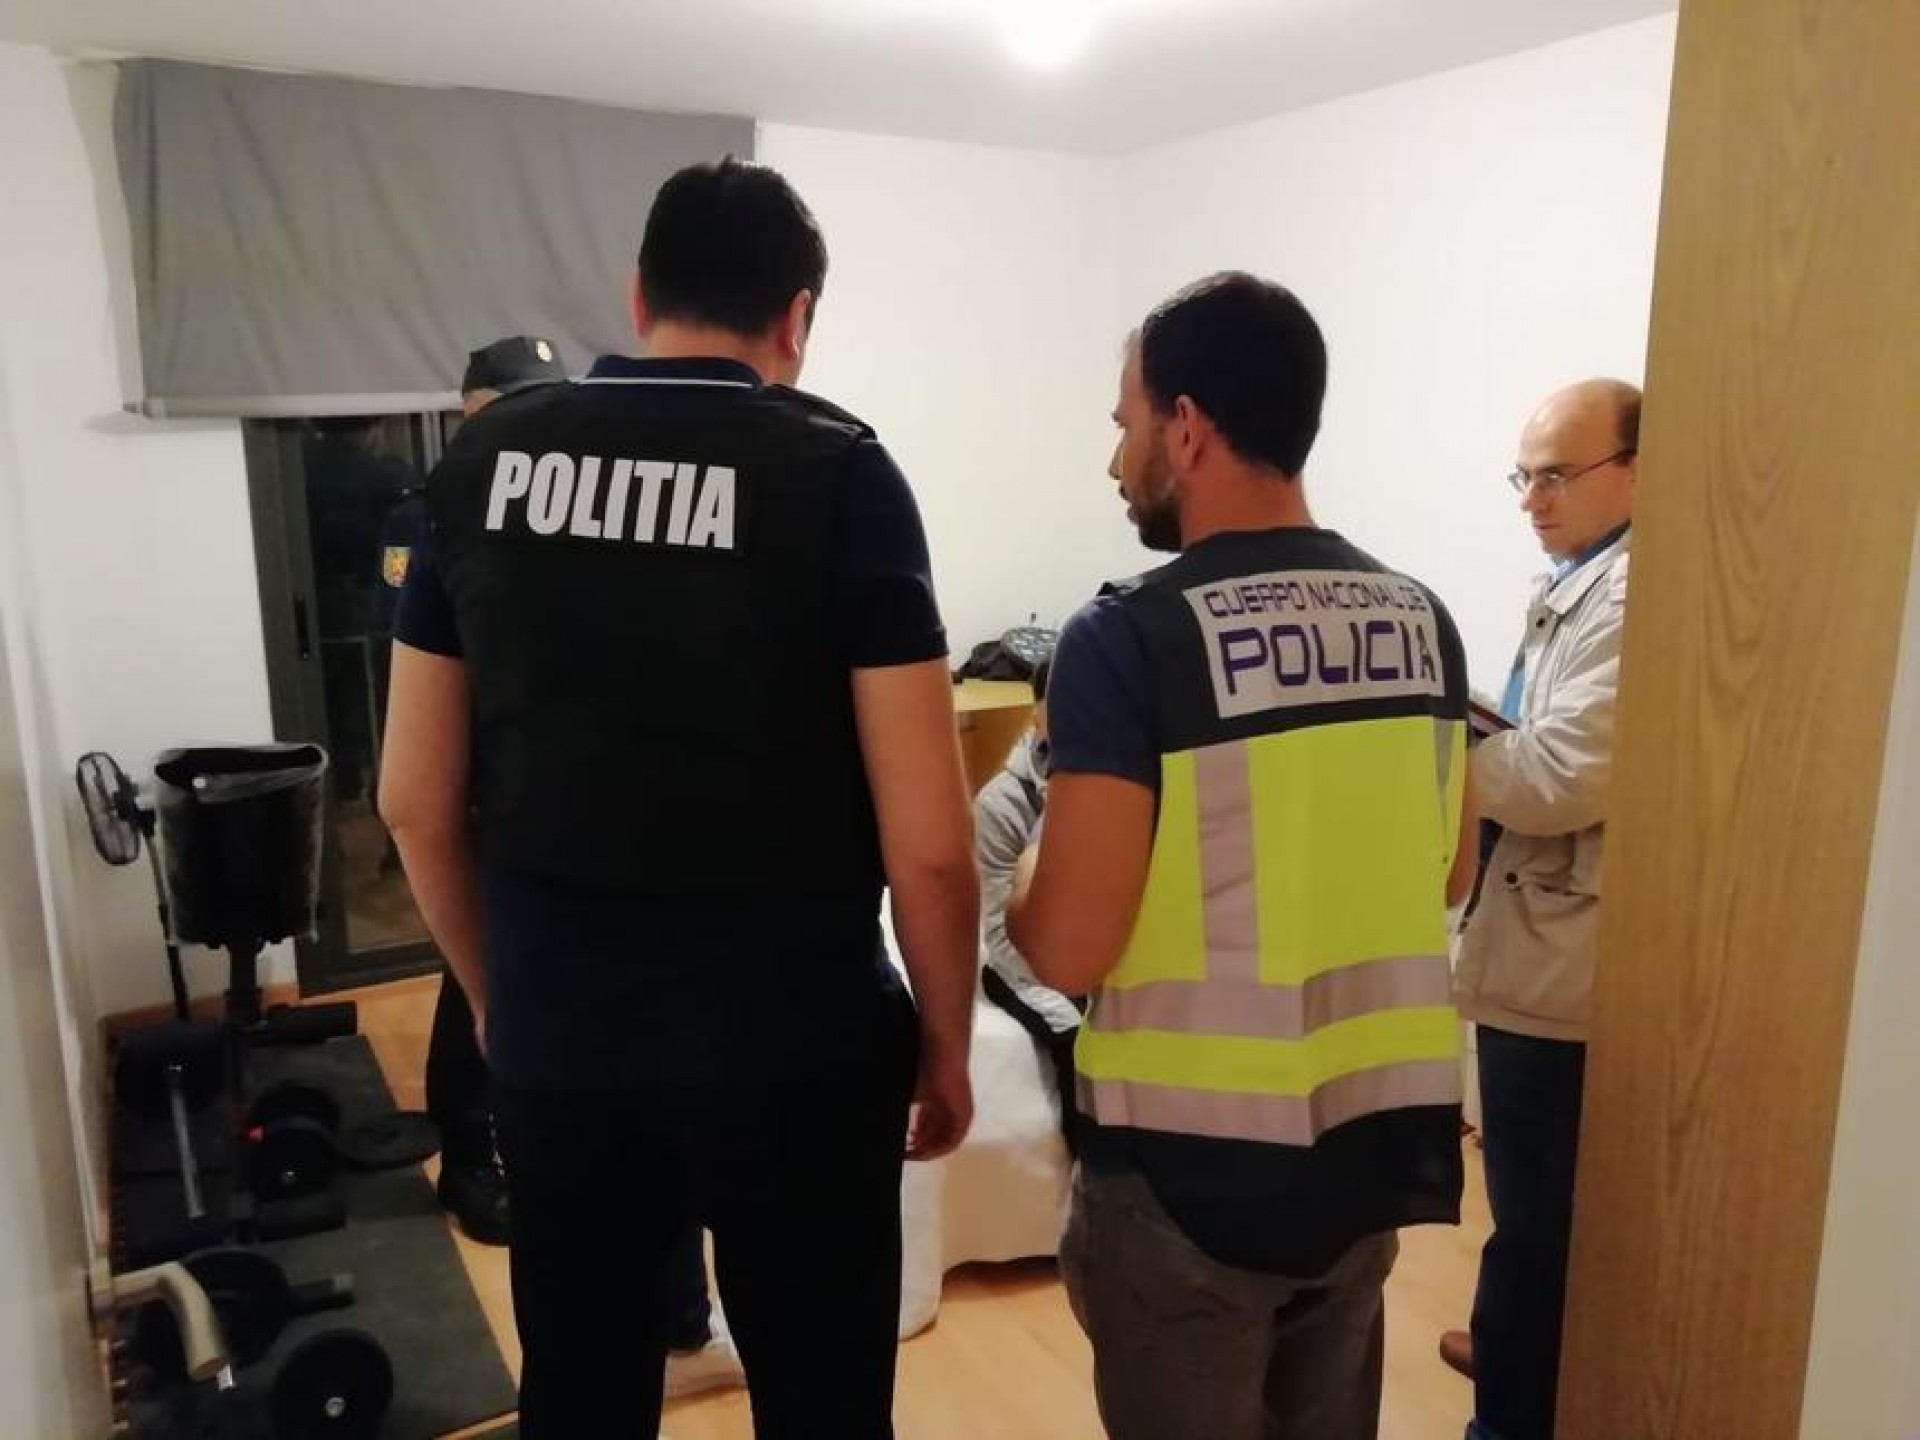 Poliția română, într-o amplă anchetă pe curpinsul Europei